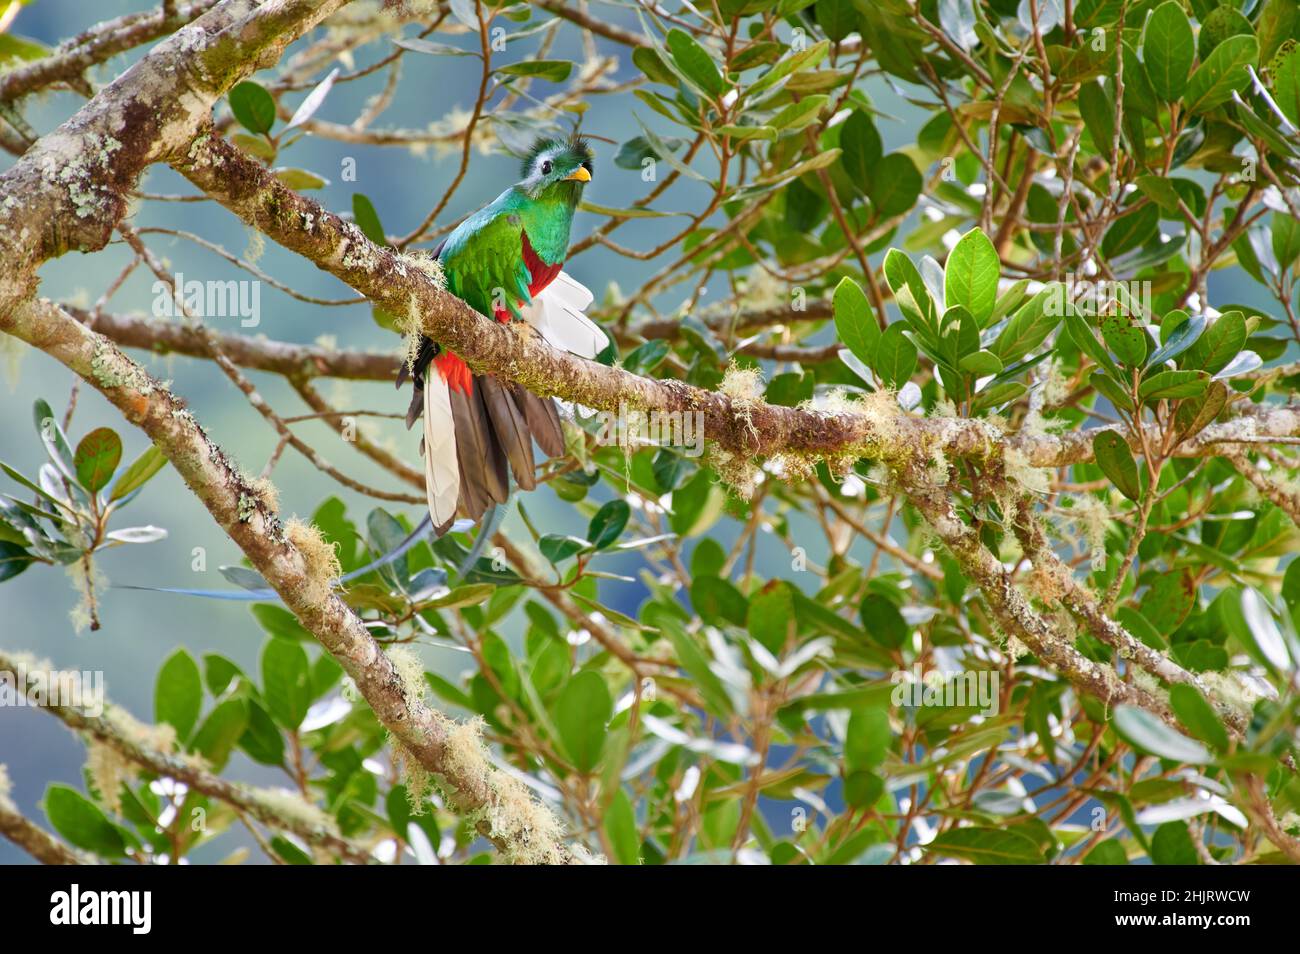 Quetzal (Pharomachrus mocinno), mâle resplendent et coloré, sur un arbre d'avocat sauvage, San Gerardo de Dota, Costa Rica, Amérique centrale Banque D'Images